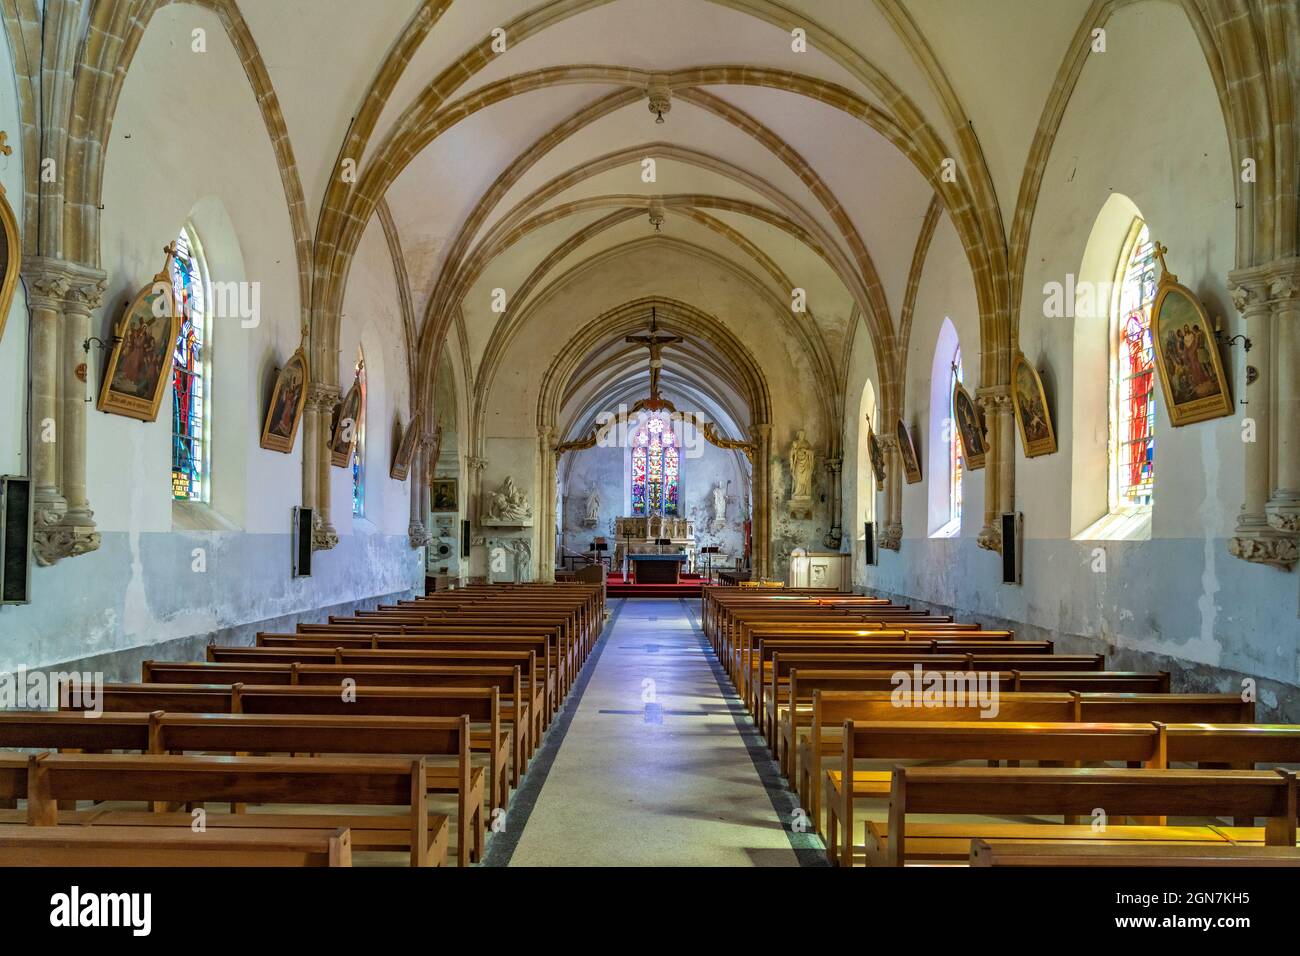 Innenraum der Kirche Saint-Pierre in Gatteville-le-Phare, Normandie, Frankreich | Saint-Pierre Kircheninterieur in Gatteville-le-Phare, Normandie, Fr. Stockfoto